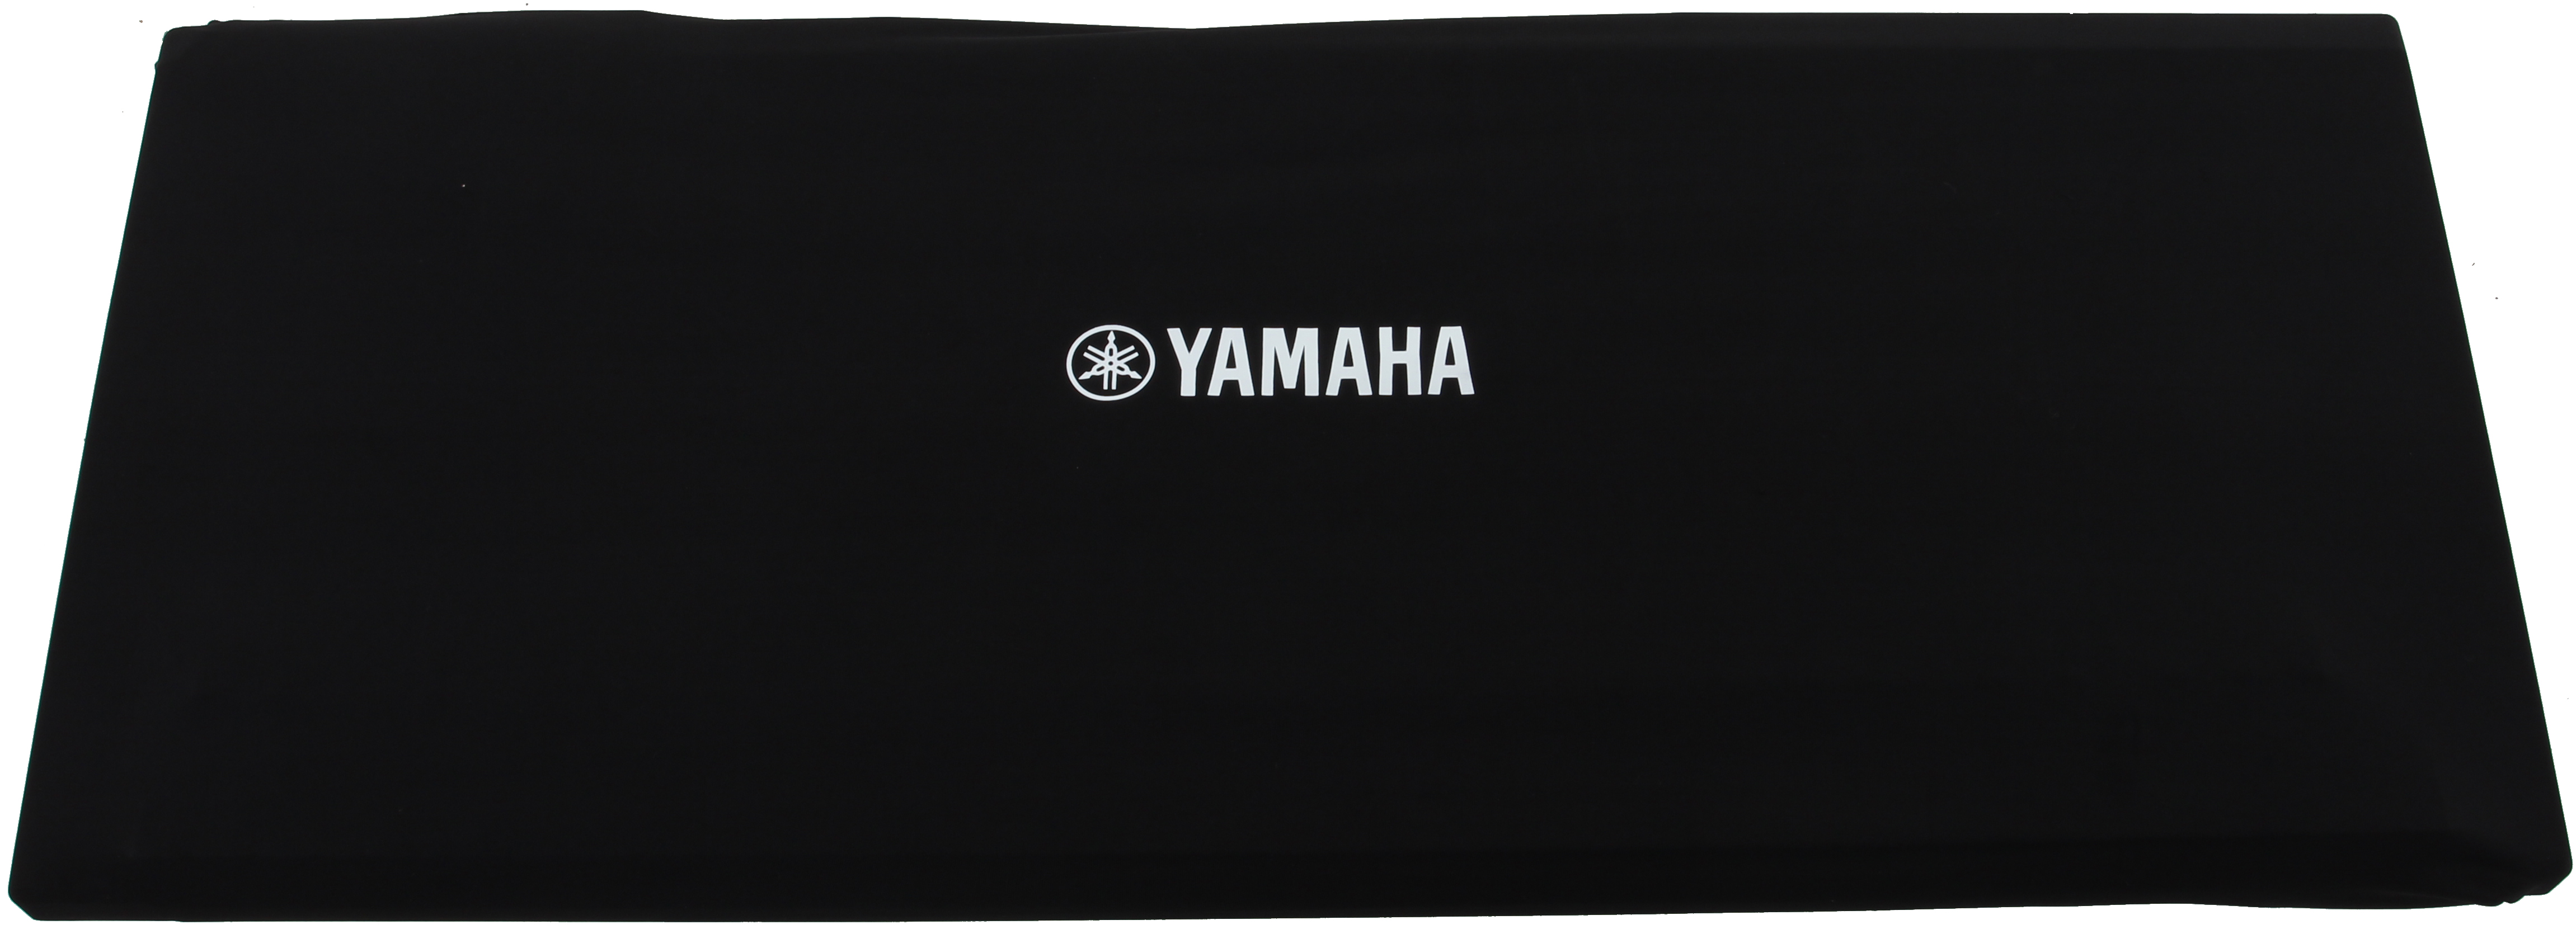 Yamaha DC110 Dust Cover 85-102 x 38-49